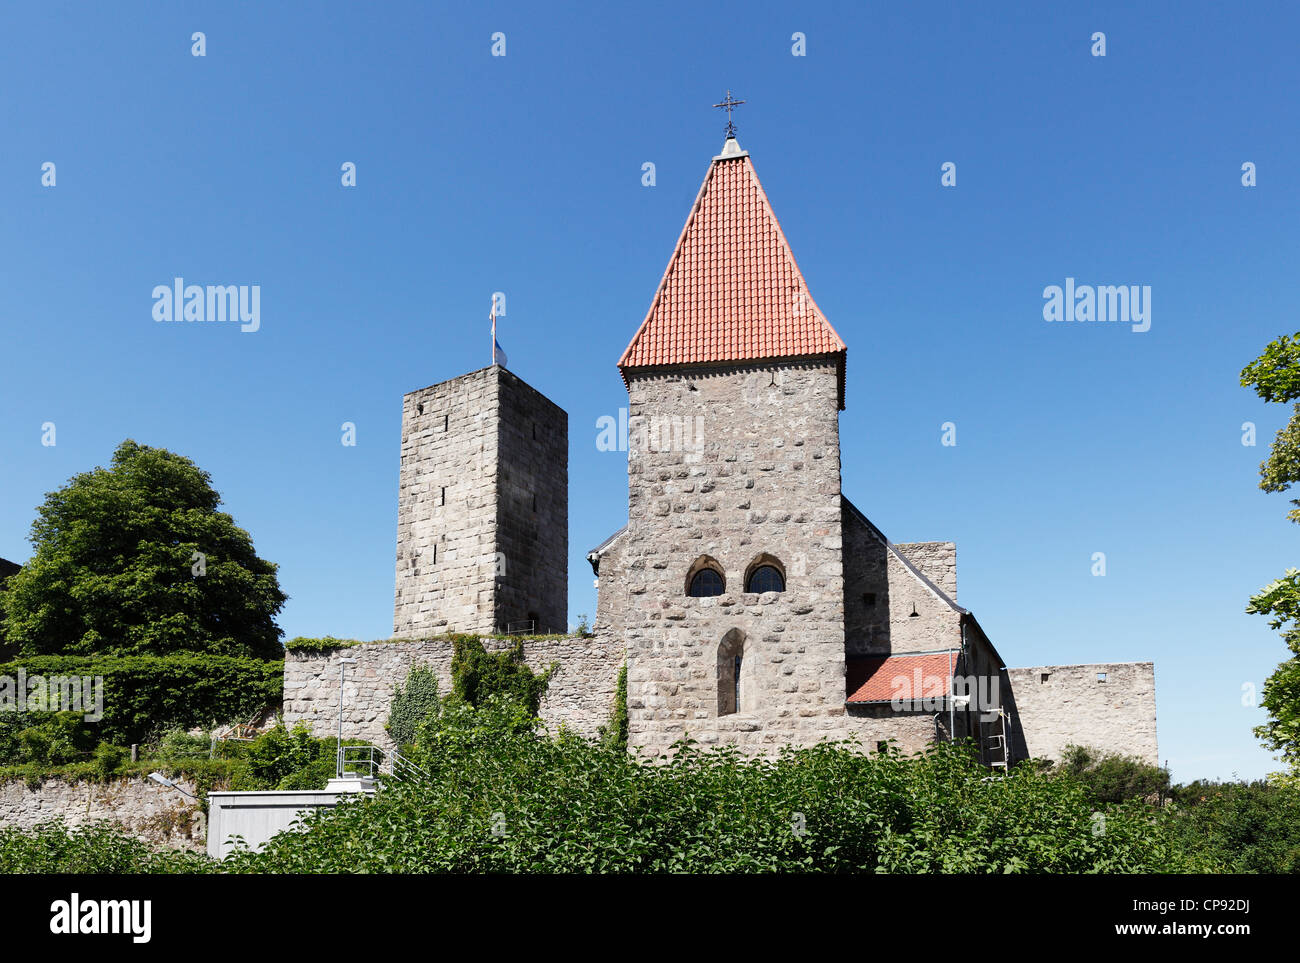 Germany, Bavaria, Vue du château de Leuchtenberg Banque D'Images